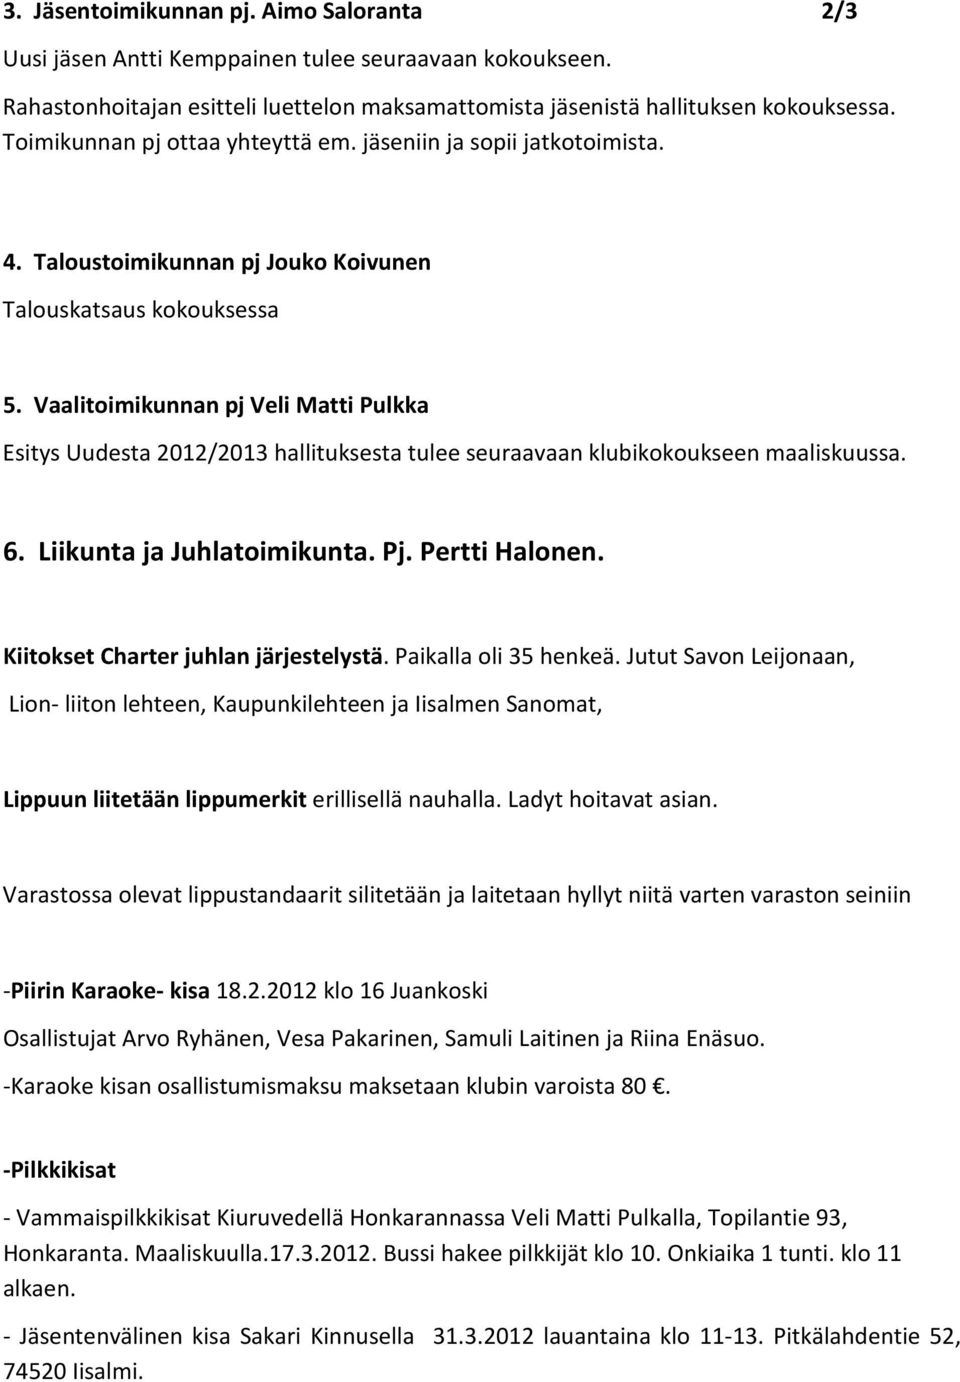 Vaalitoimikunnan pj Veli Matti Pulkka Esitys Uudesta 2012/2013 hallituksesta tulee seuraavaan klubikokoukseen maaliskuussa. 6. Liikunta ja Juhlatoimikunta. Pj. Pertti Halonen.